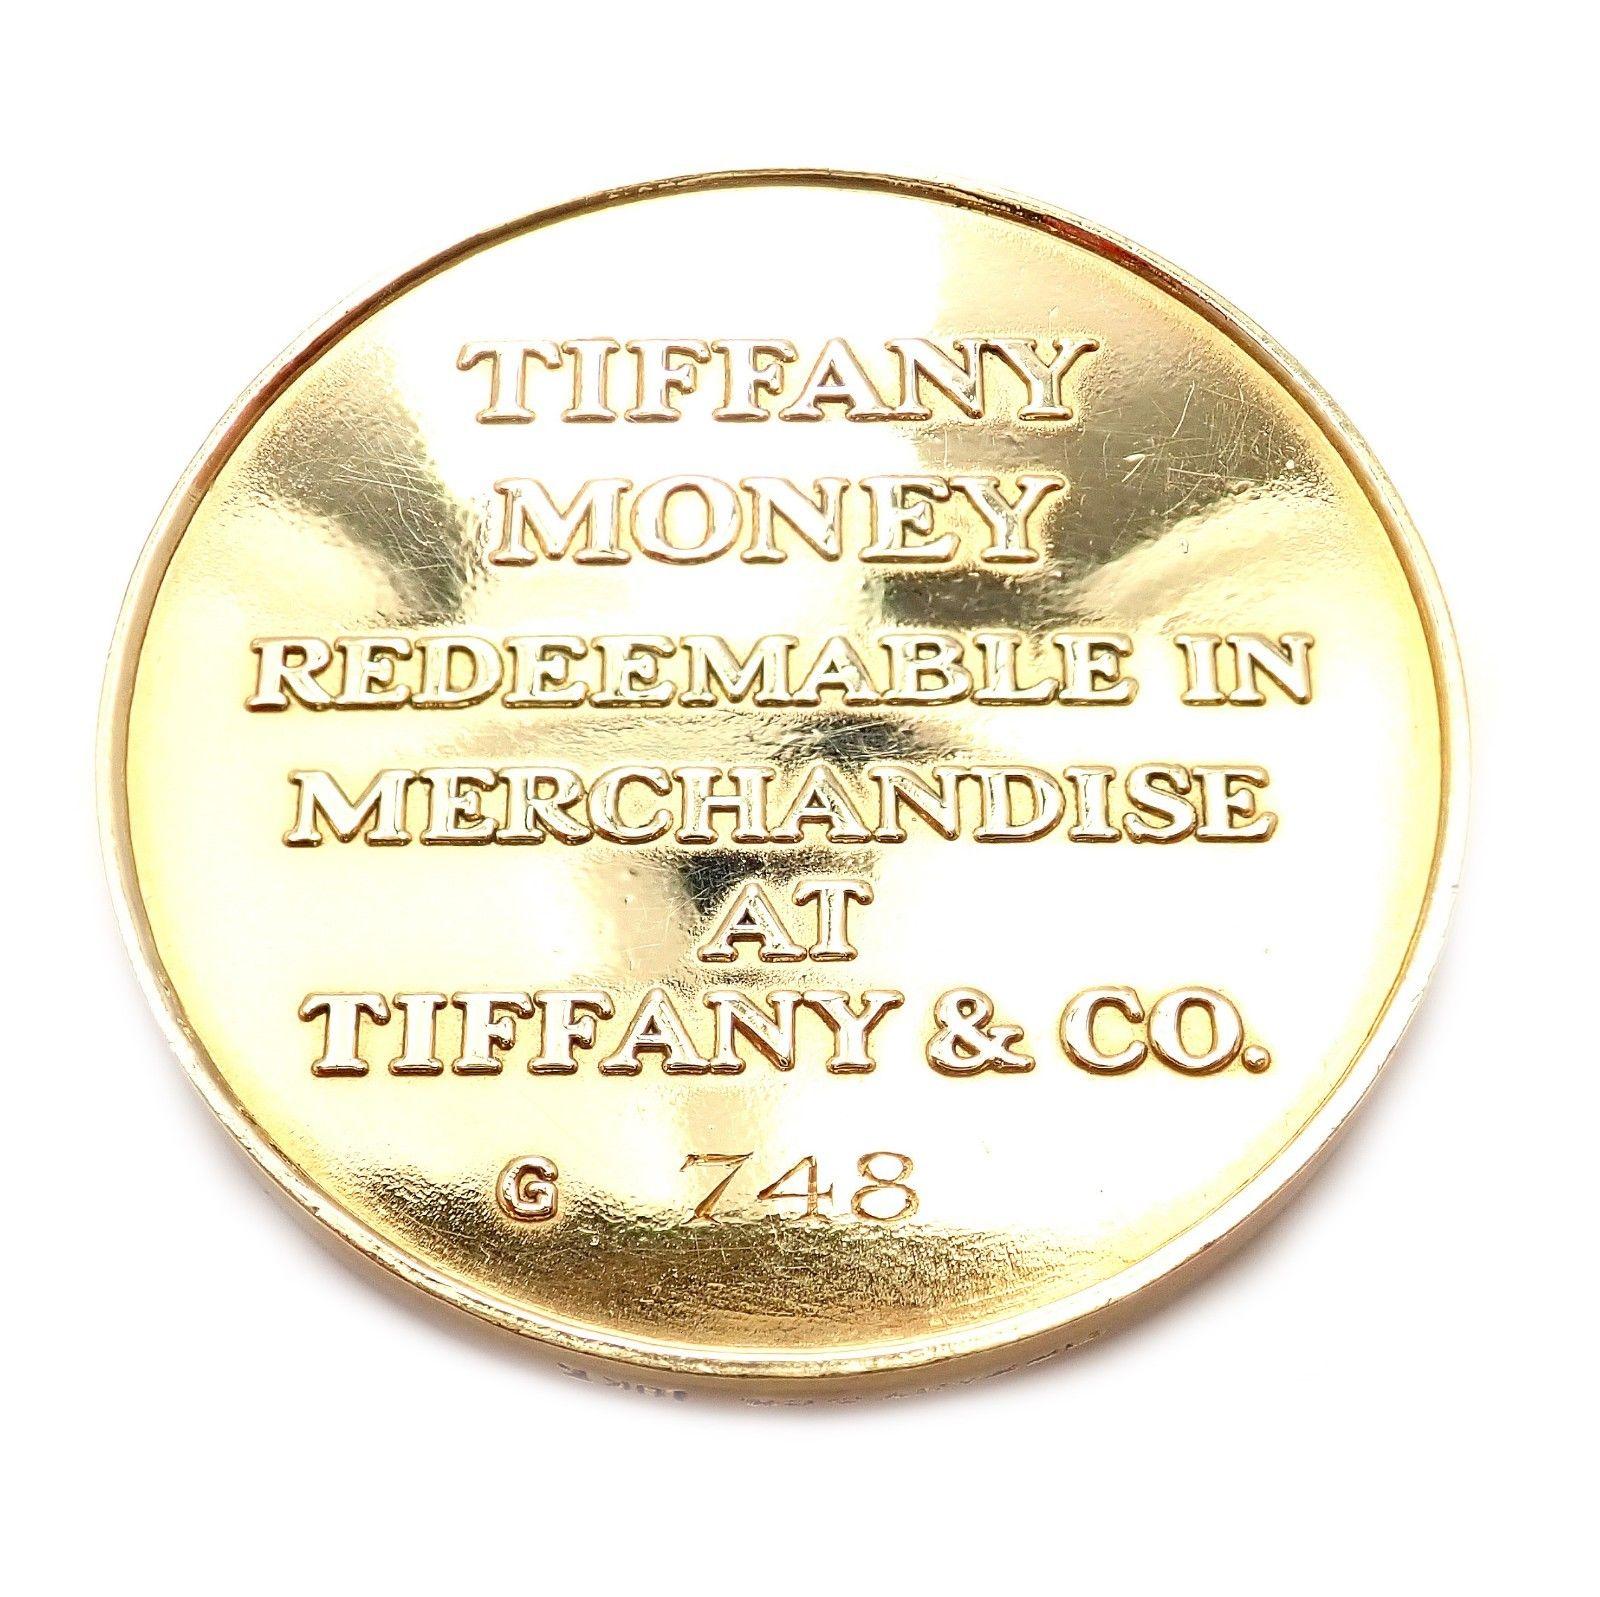 tiffany money coin